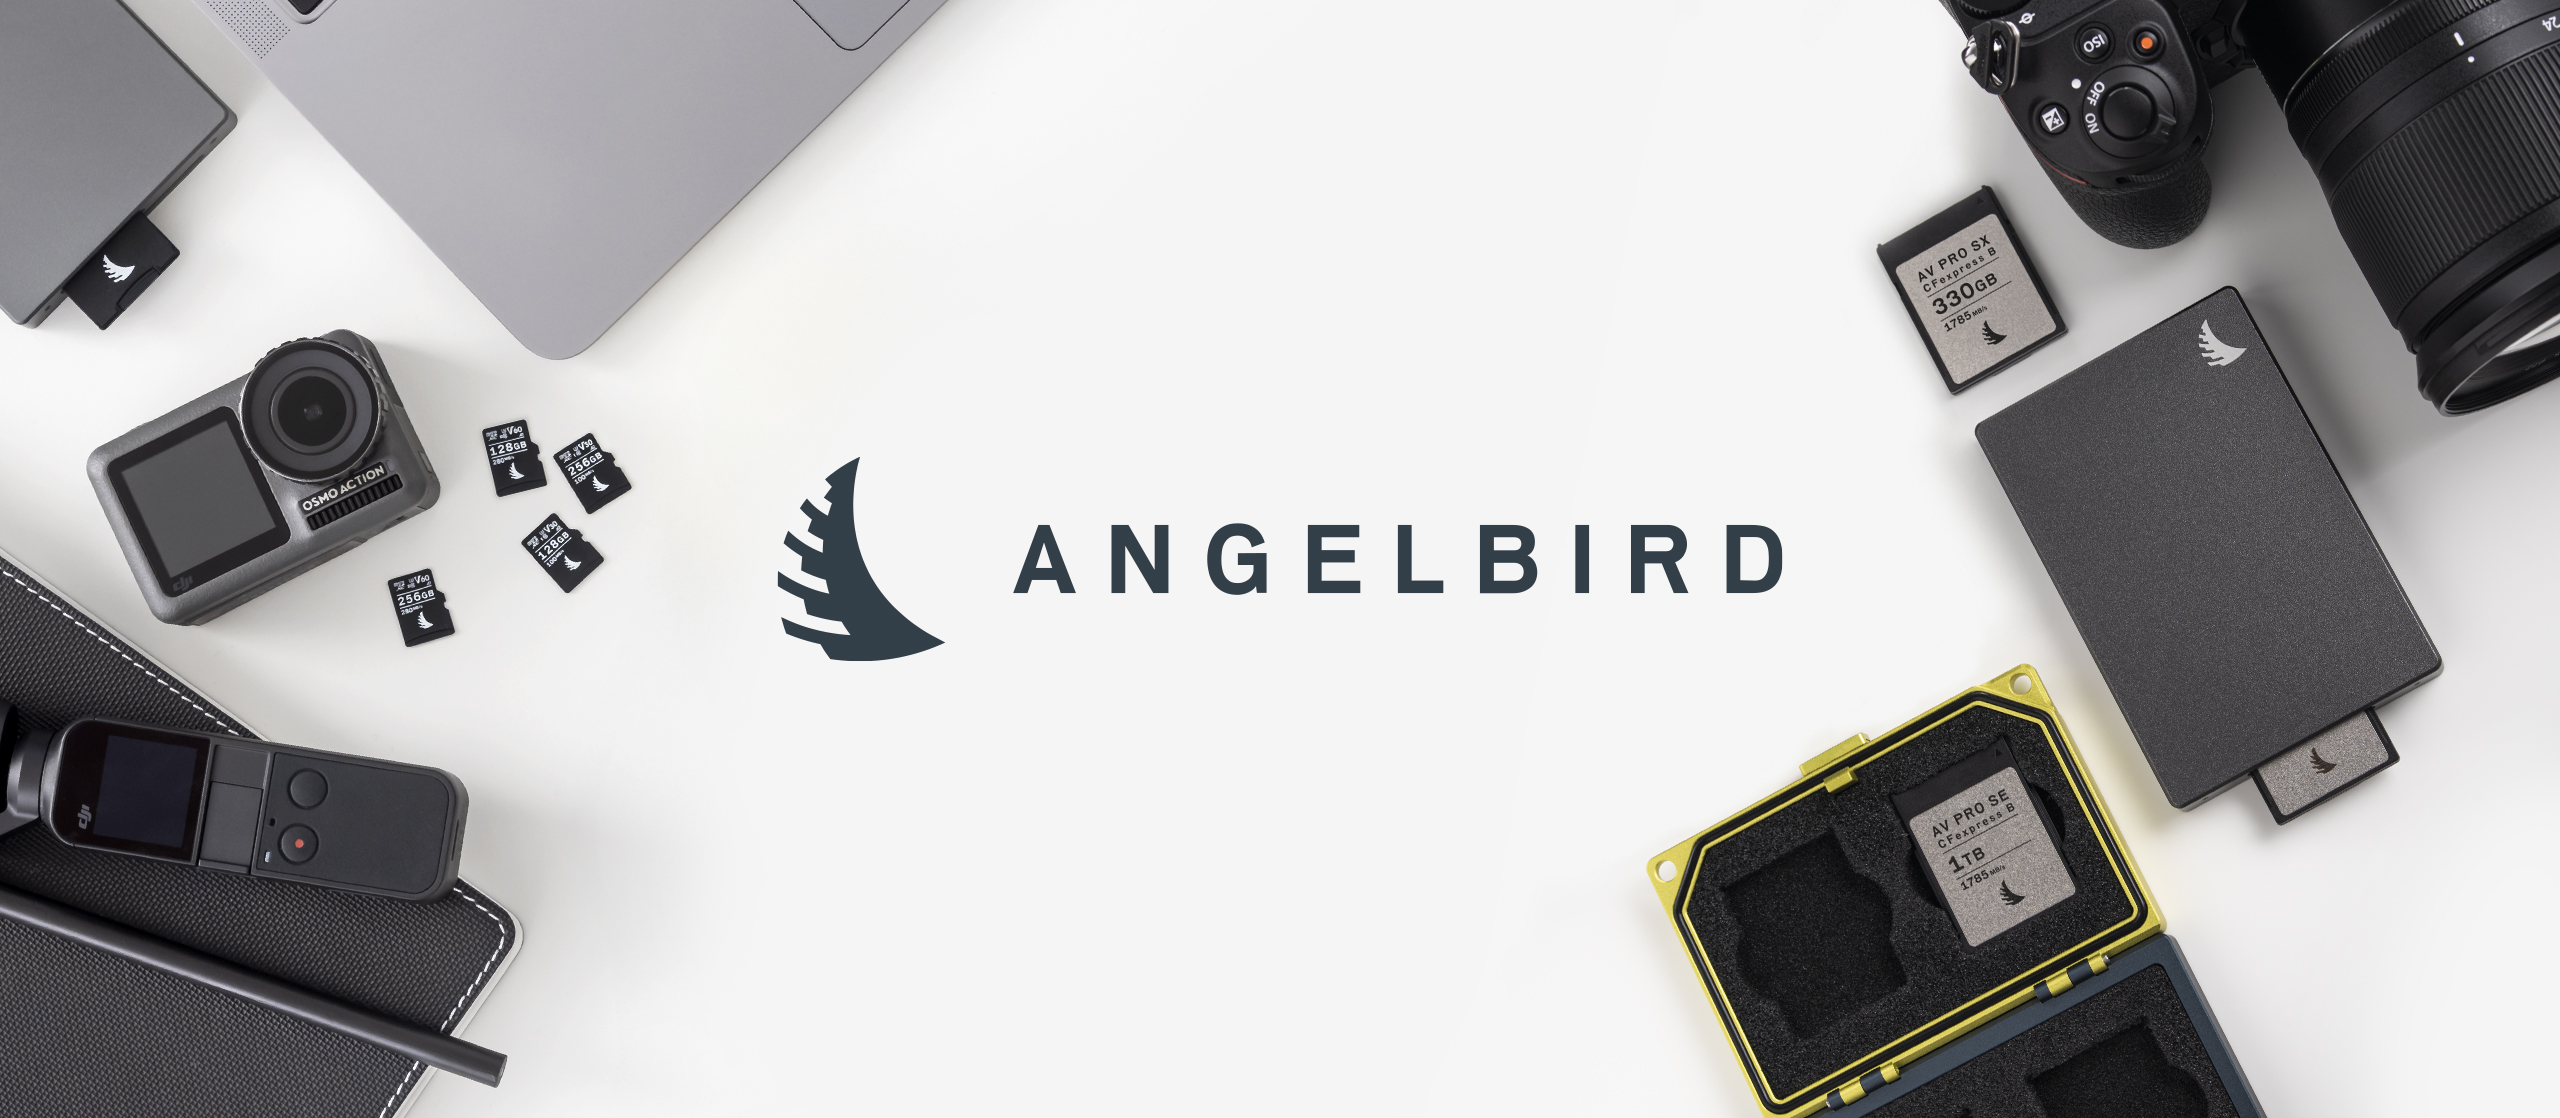 Unterschiedliche Angelbird Produkte wie der Media Tank, ein Lesegerät für Speicherkarten und unterschiedliche Angelbird Speicherkarten auf weißem Untergrund mit Angelbird-Logo in der Mitte